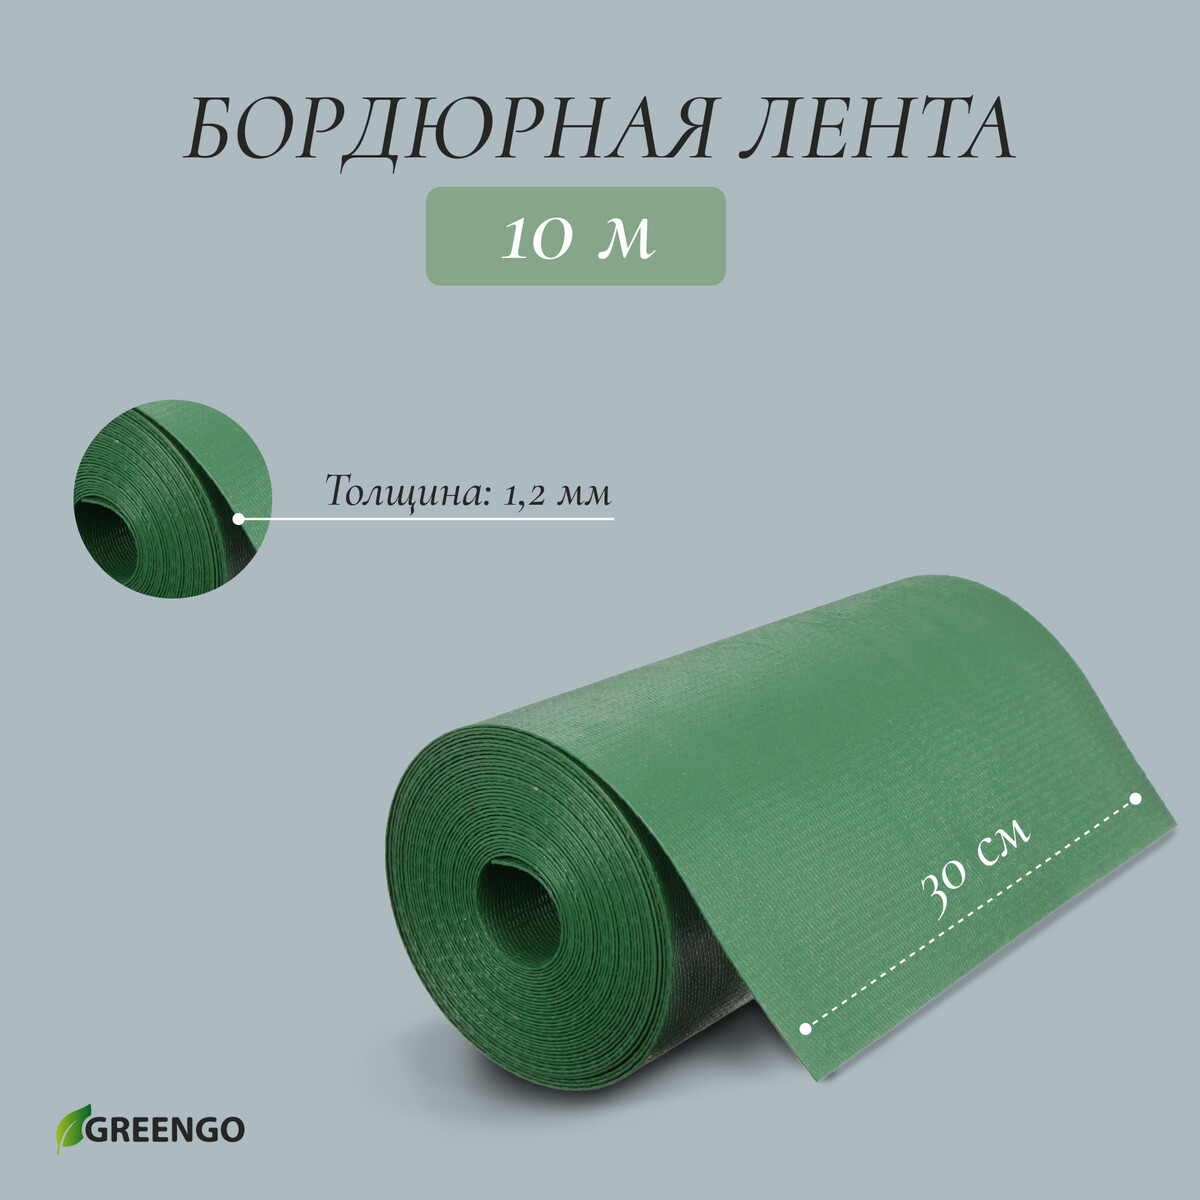 Лента бордюрная, 0.3 × 10 м, толщина 1.2 мм, пластиковая, зеленая, greengo лента бордюрная 0 15 × 9 м толщина 0 6 мм пластиковая гофра зеленая greengo